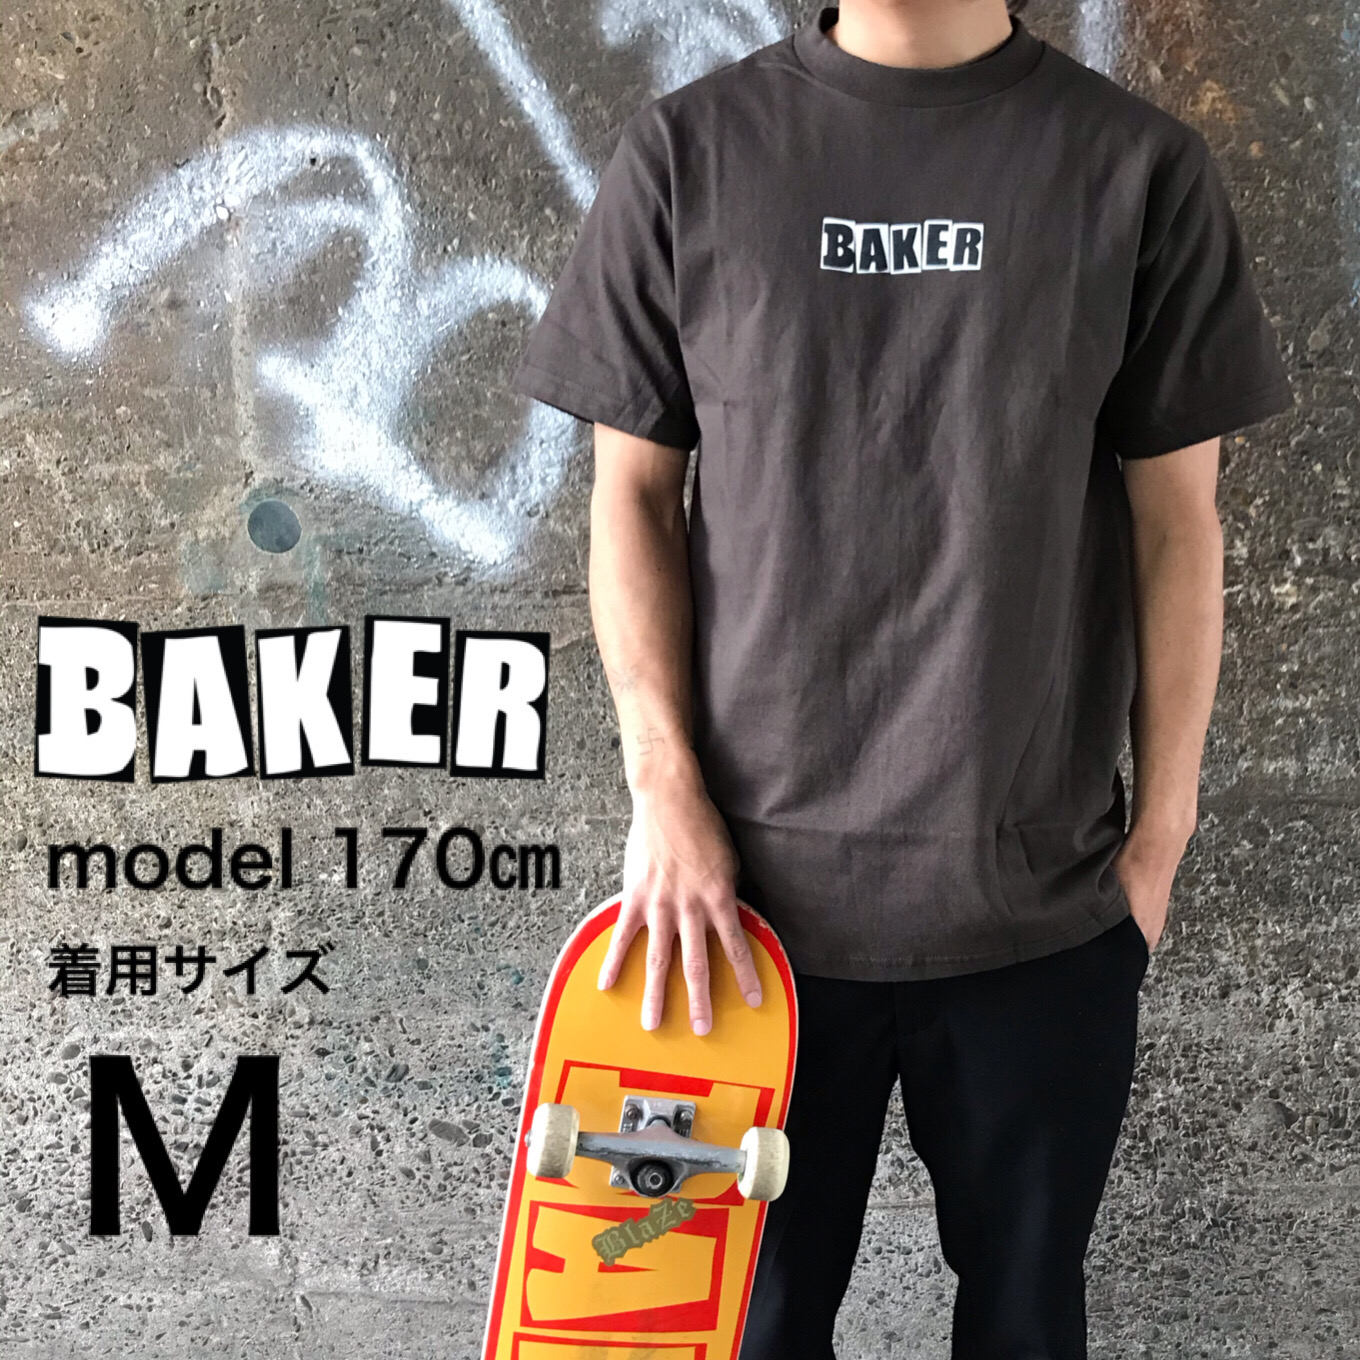 楽天市場 Baker Baker Skate Brand Logo T Shirt Dark Chocolate ベイカー スケートボード スケボー Tシャツ Tシャツブラウン ダークチョコレート こげ茶 メンズ レディース なみのりこぞう 楽天市場店